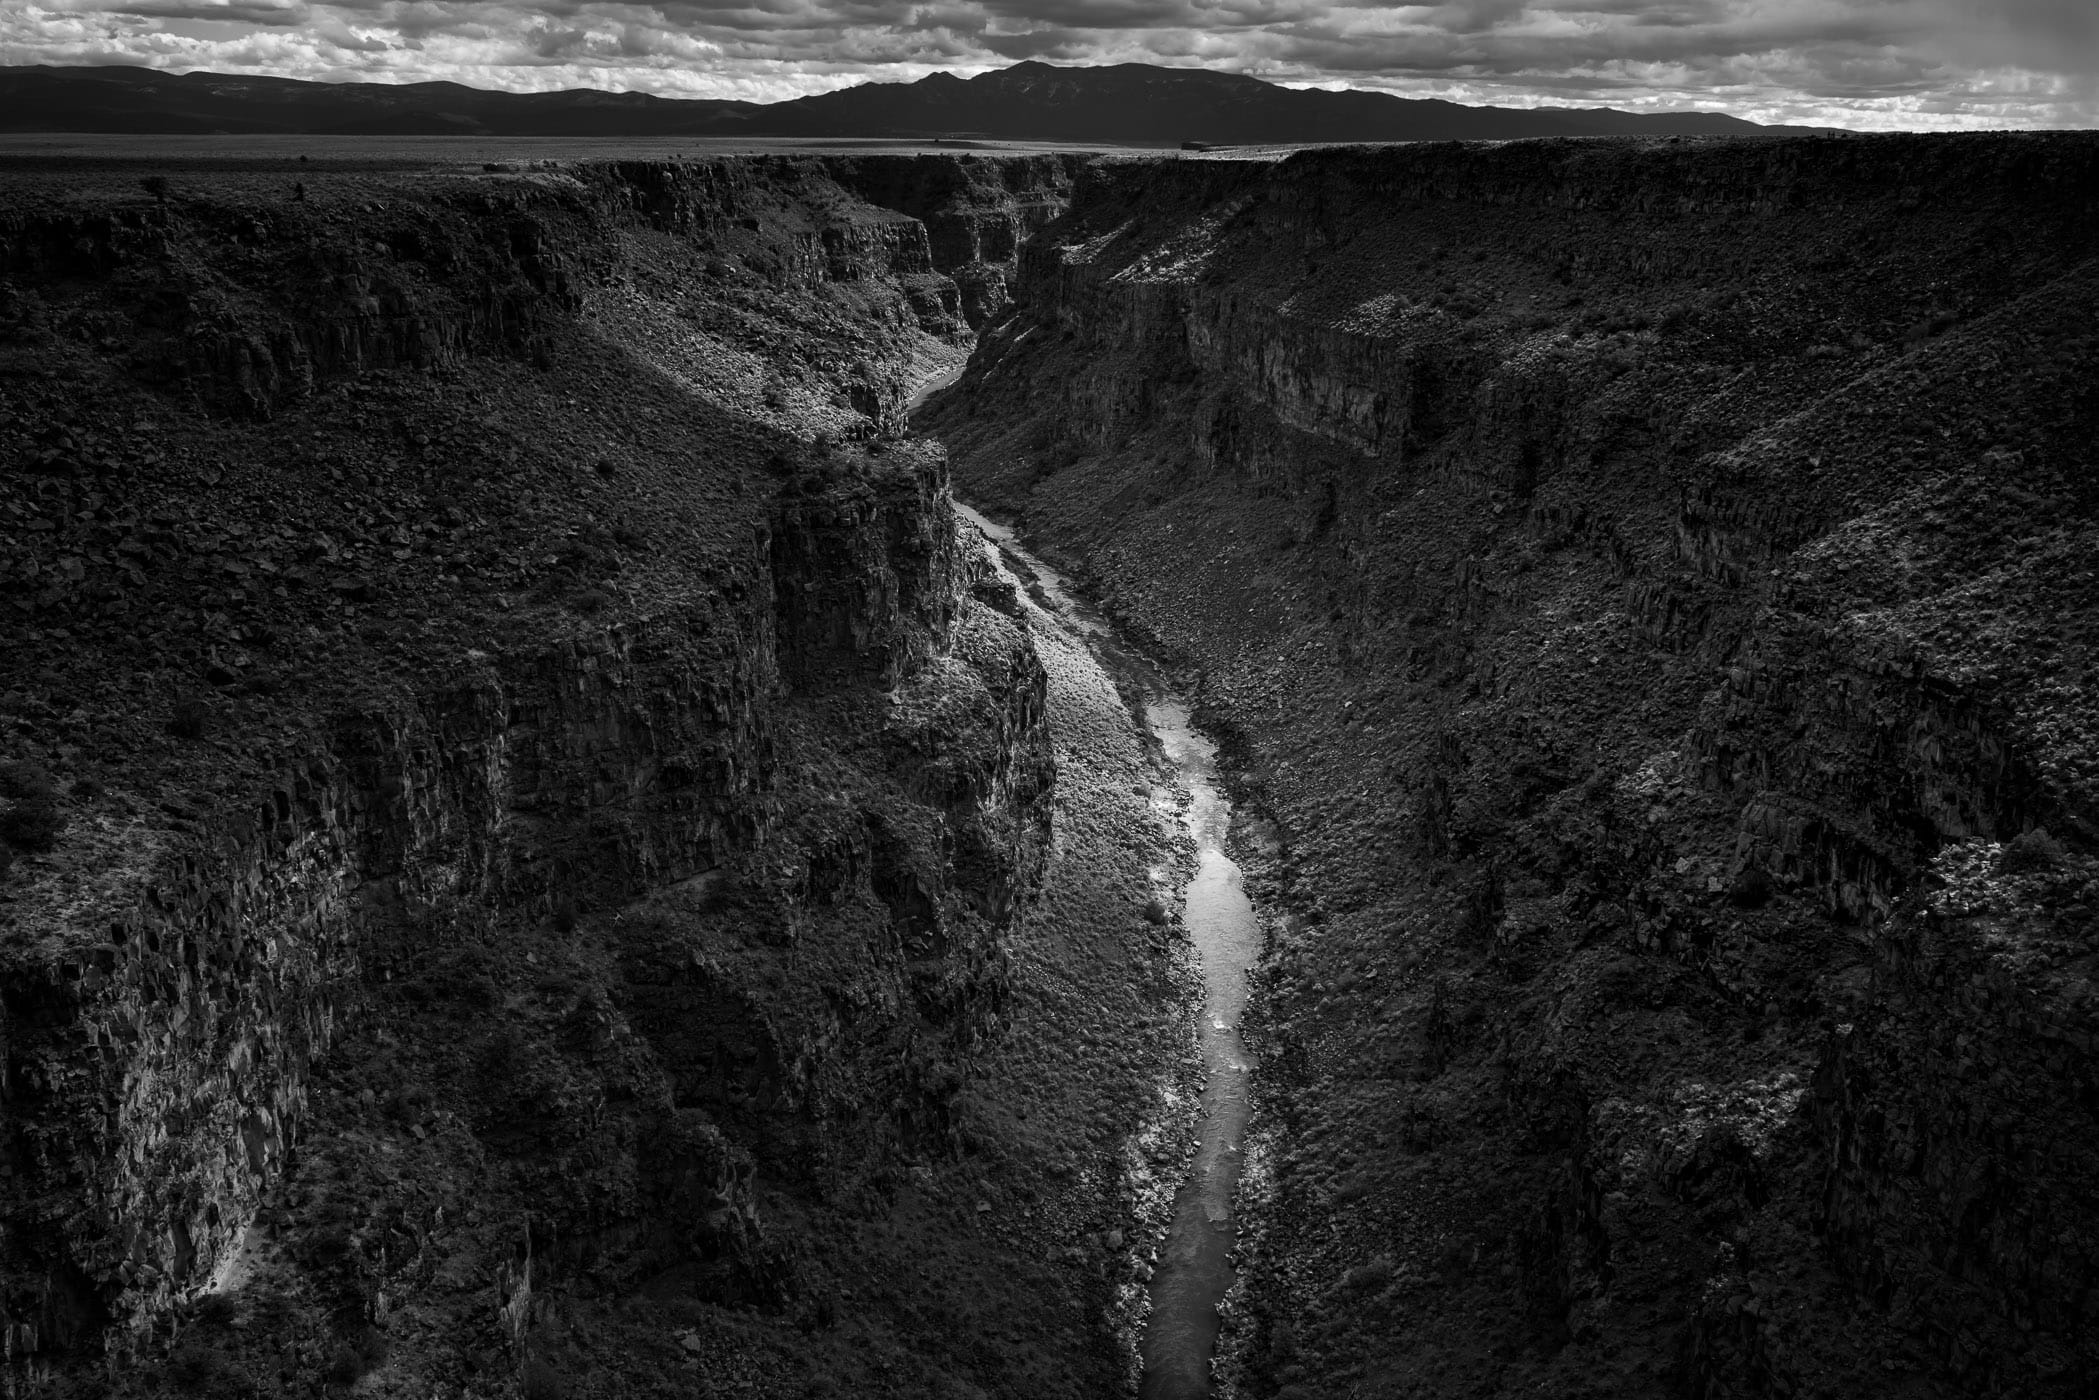 The Rio Grande flows through the desert at the Rio Grande Gorge near Taos, New Mexico,